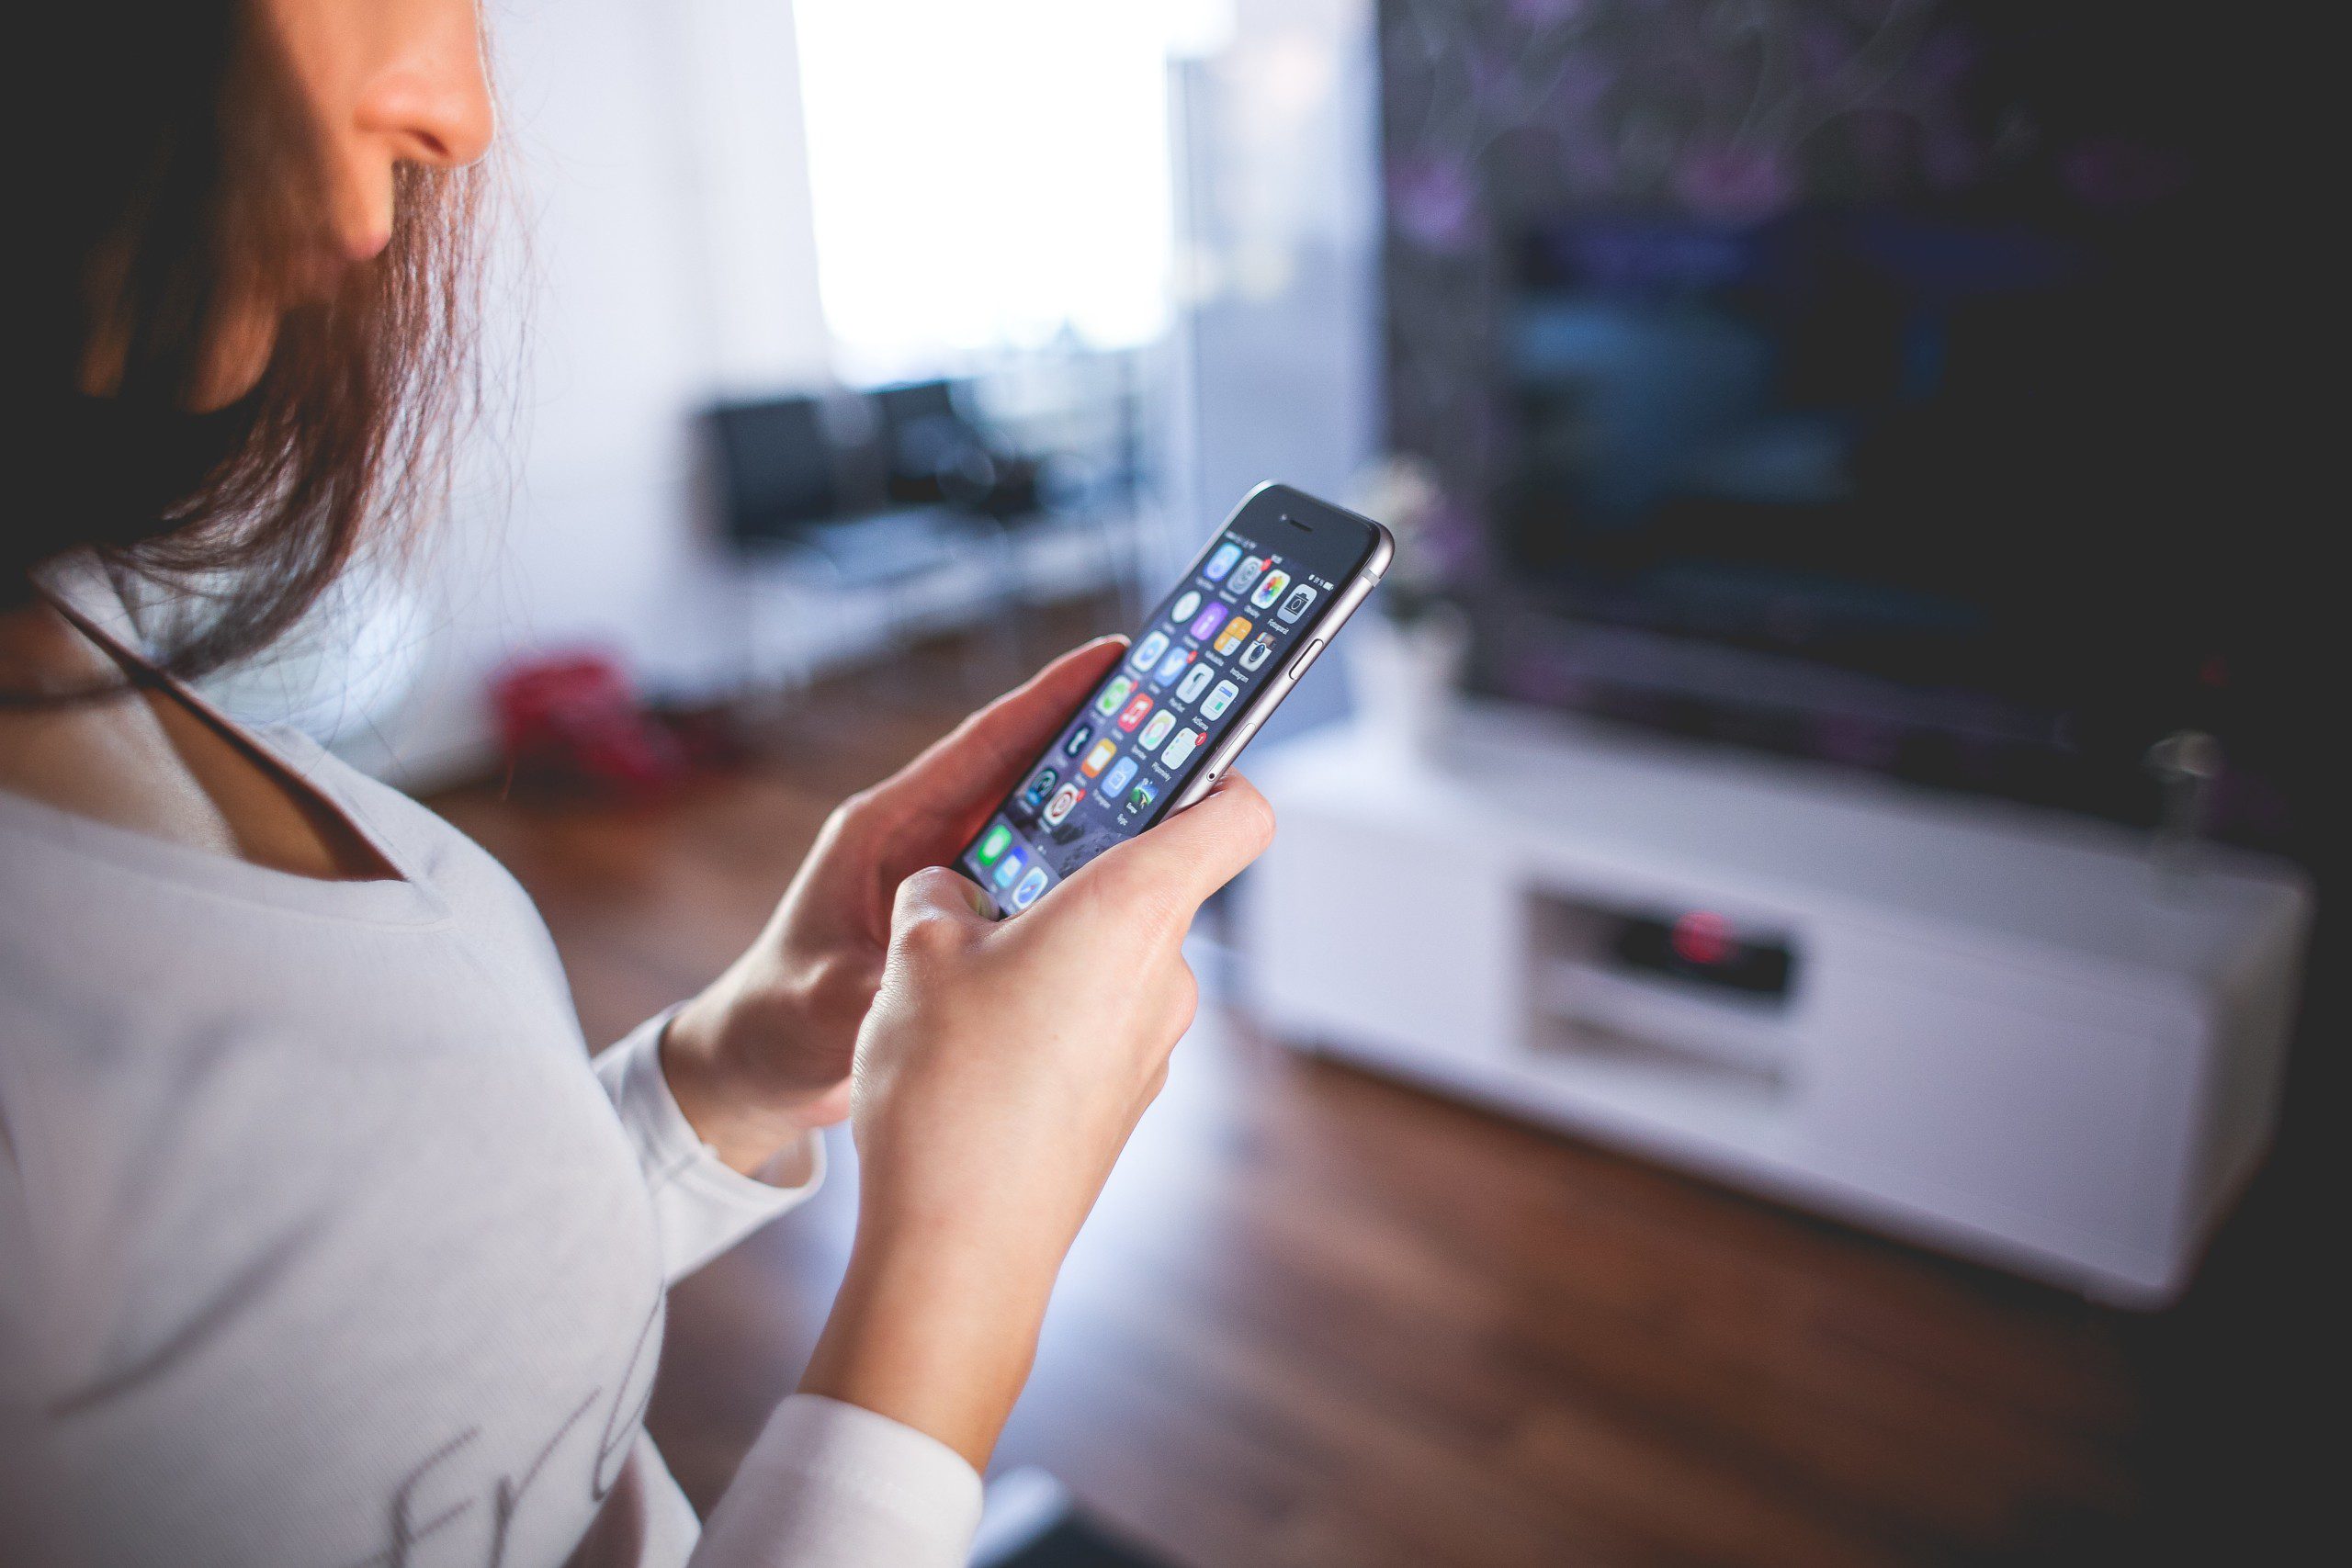 Imagem de uma mulher segurando um smartphone com diversos aplicativos na tela.